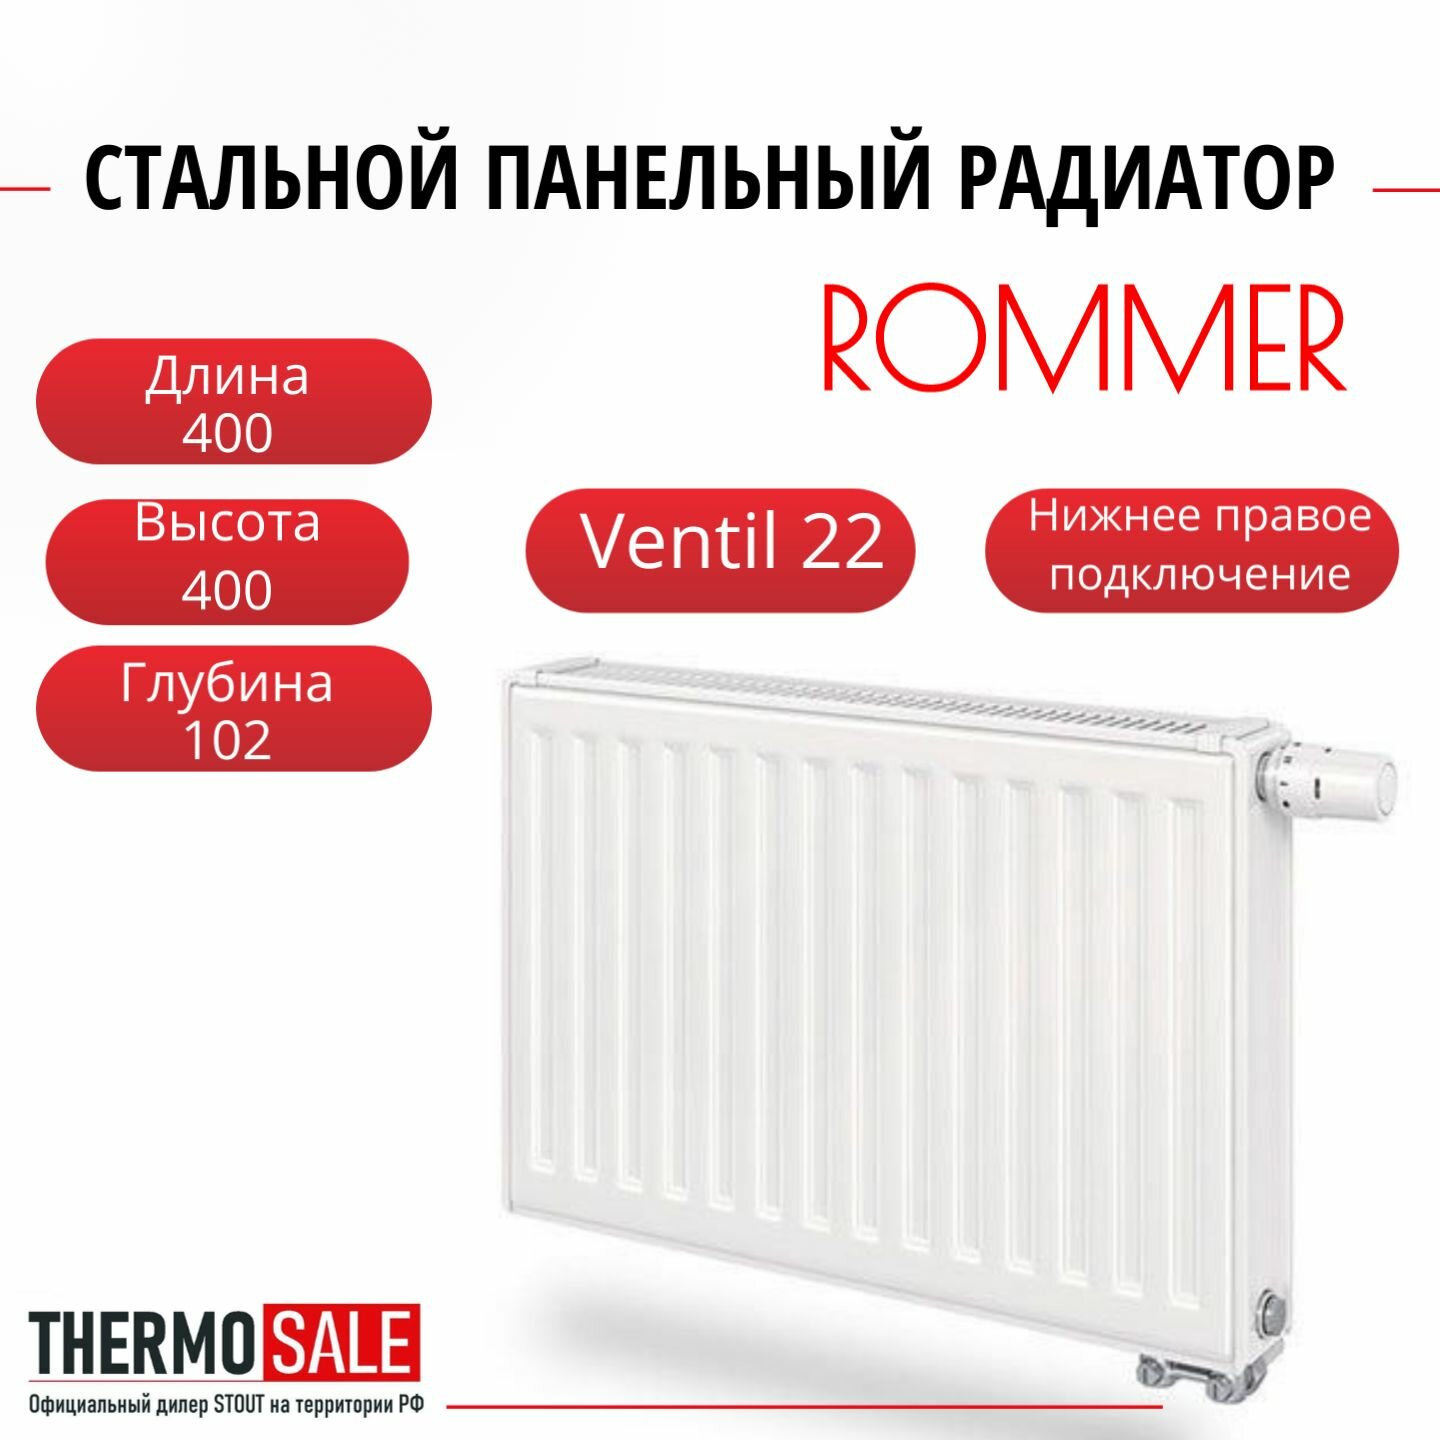 Радиатор стальной панельный ROMMER 400х400 нижнее правое подключение Ventil 22/400/400 RRS-2020-224040